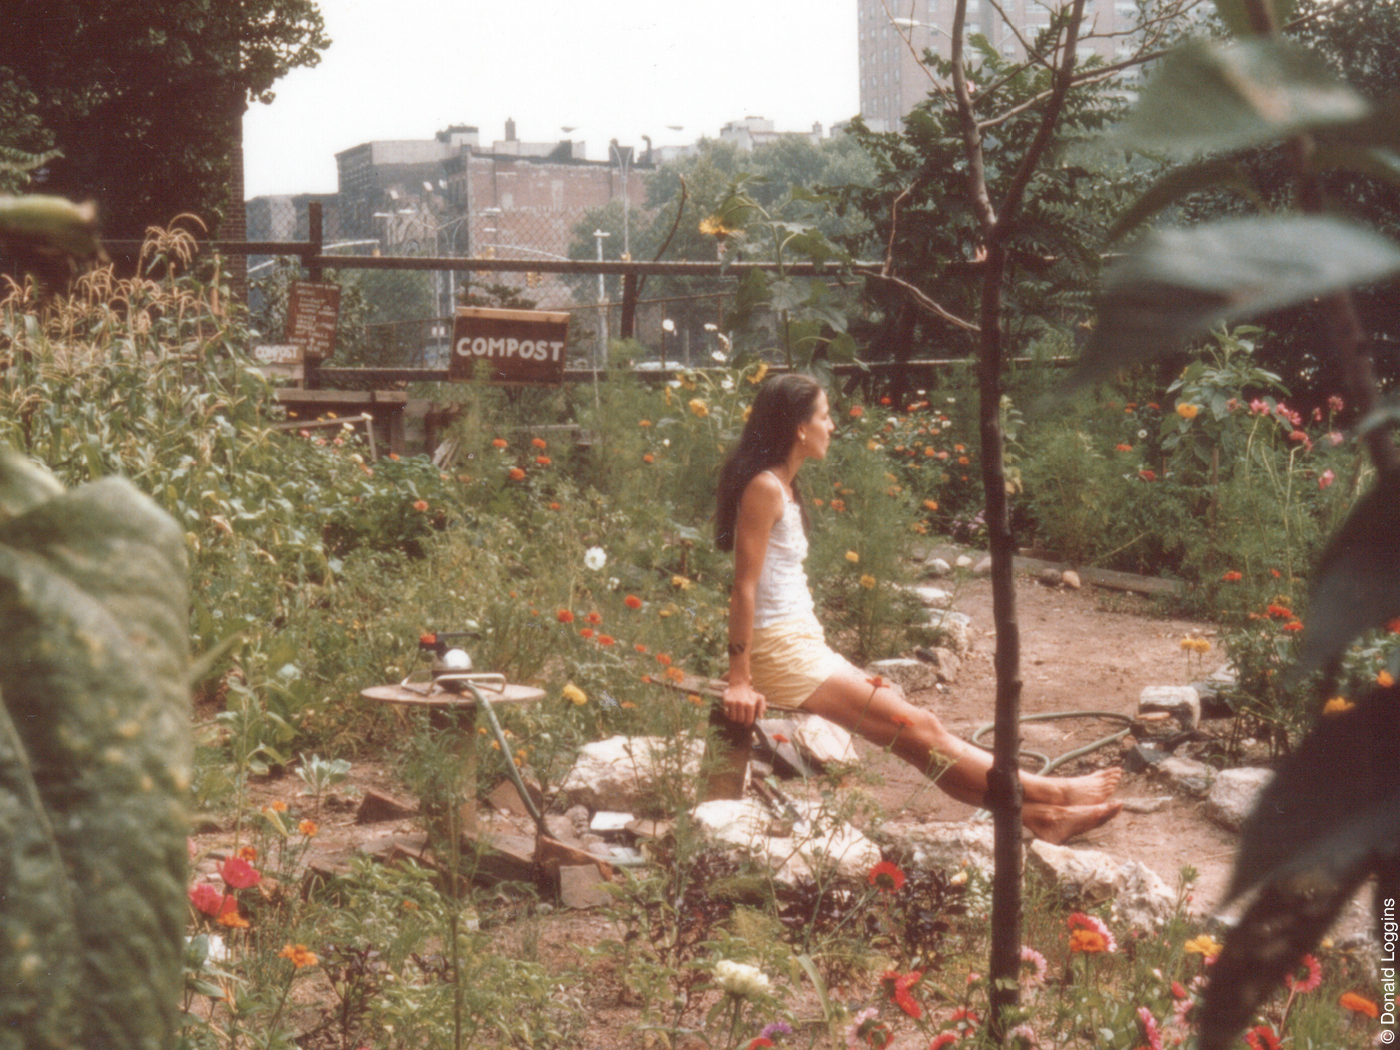 Frau sitzt in einem verwilderten Garten